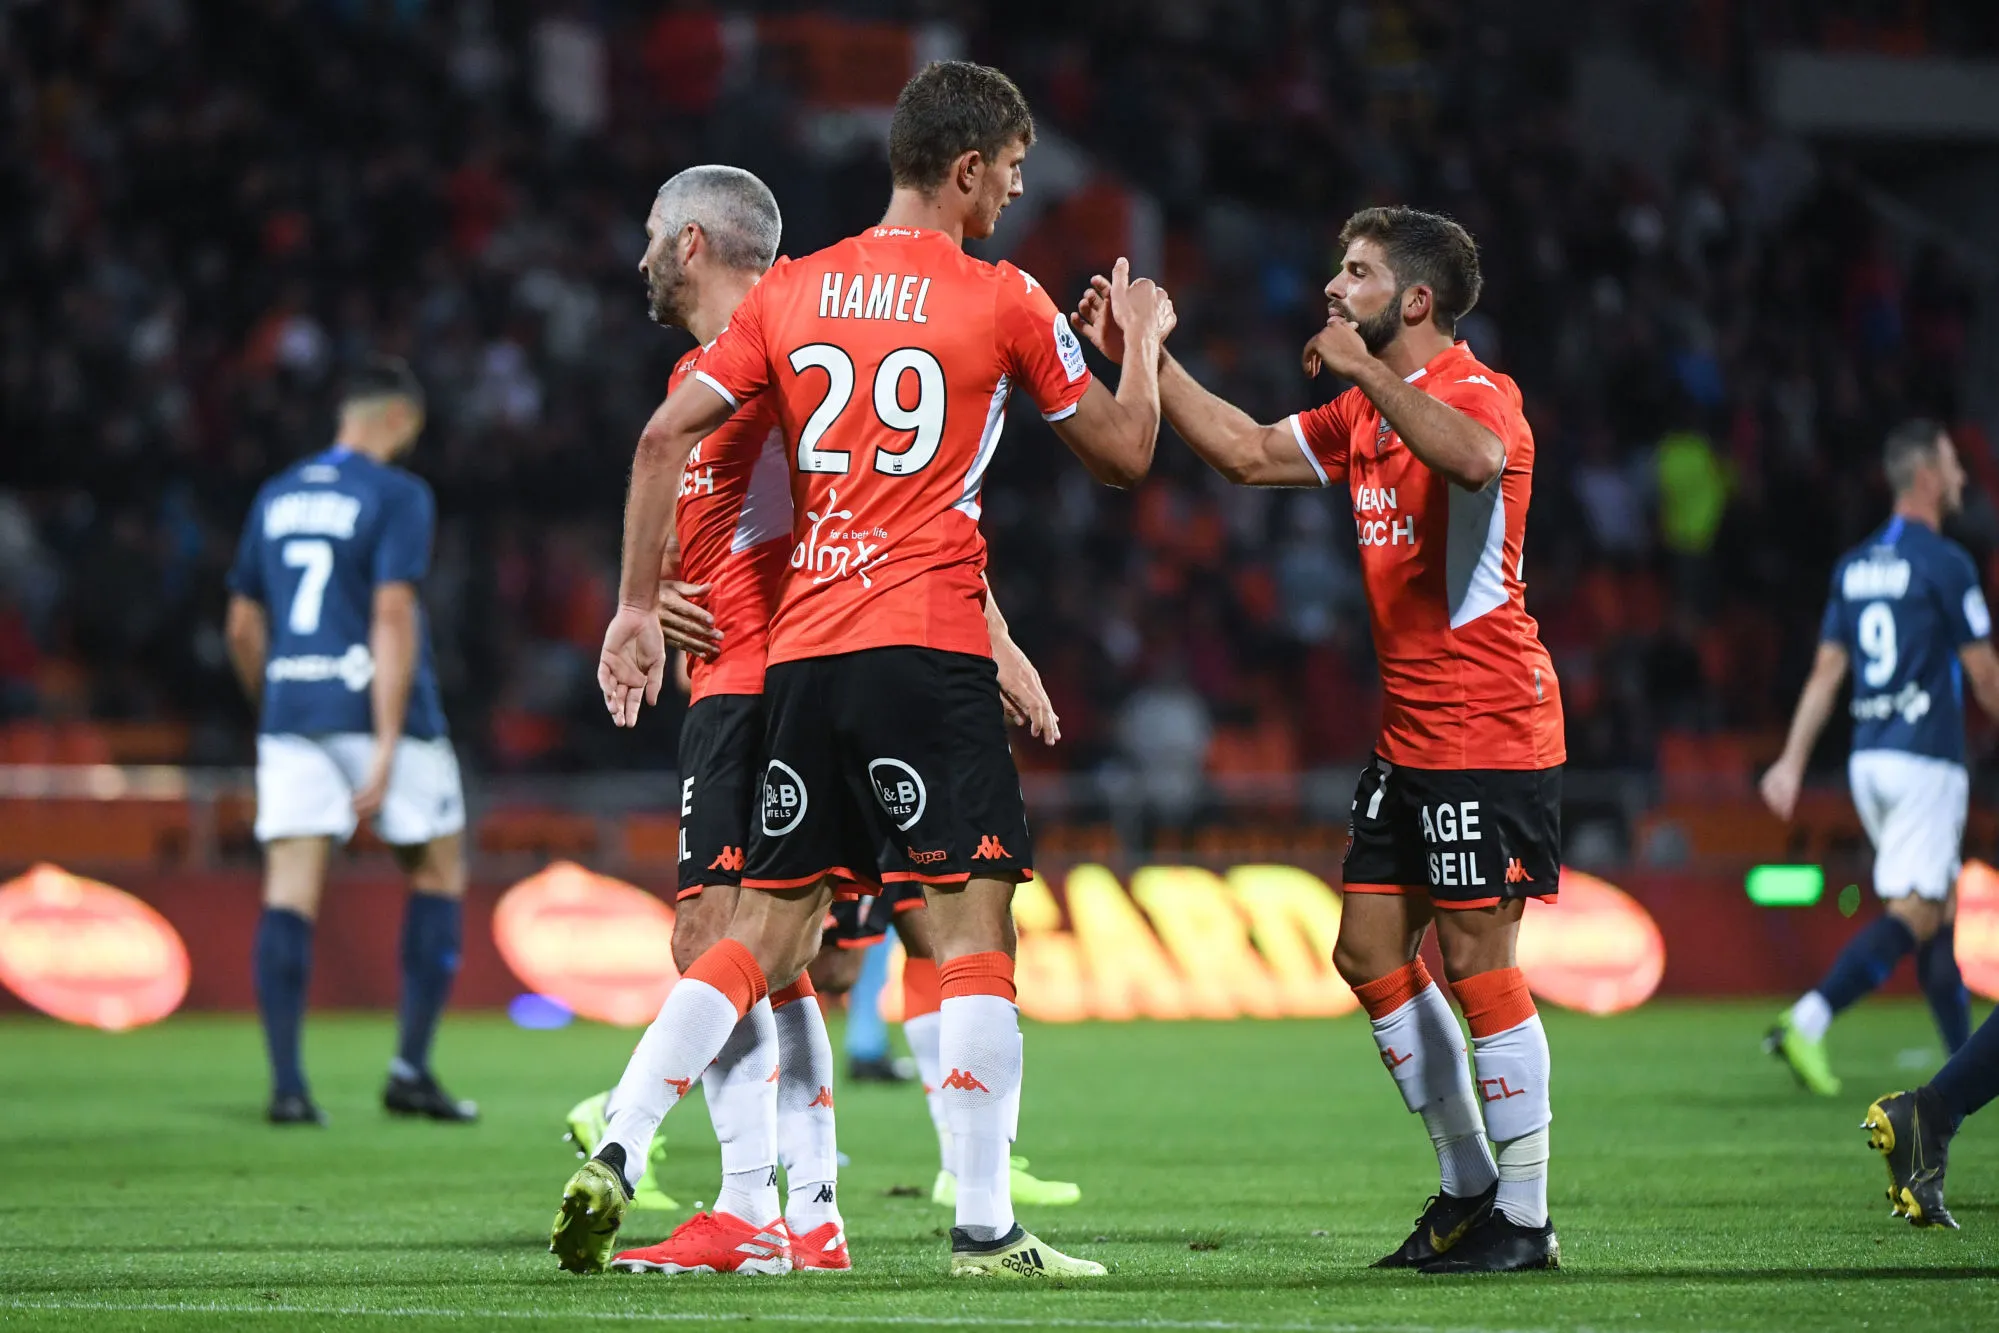 Pronostic Lorient Rodez : Analyse, prono et cotes du match de Ligue 2